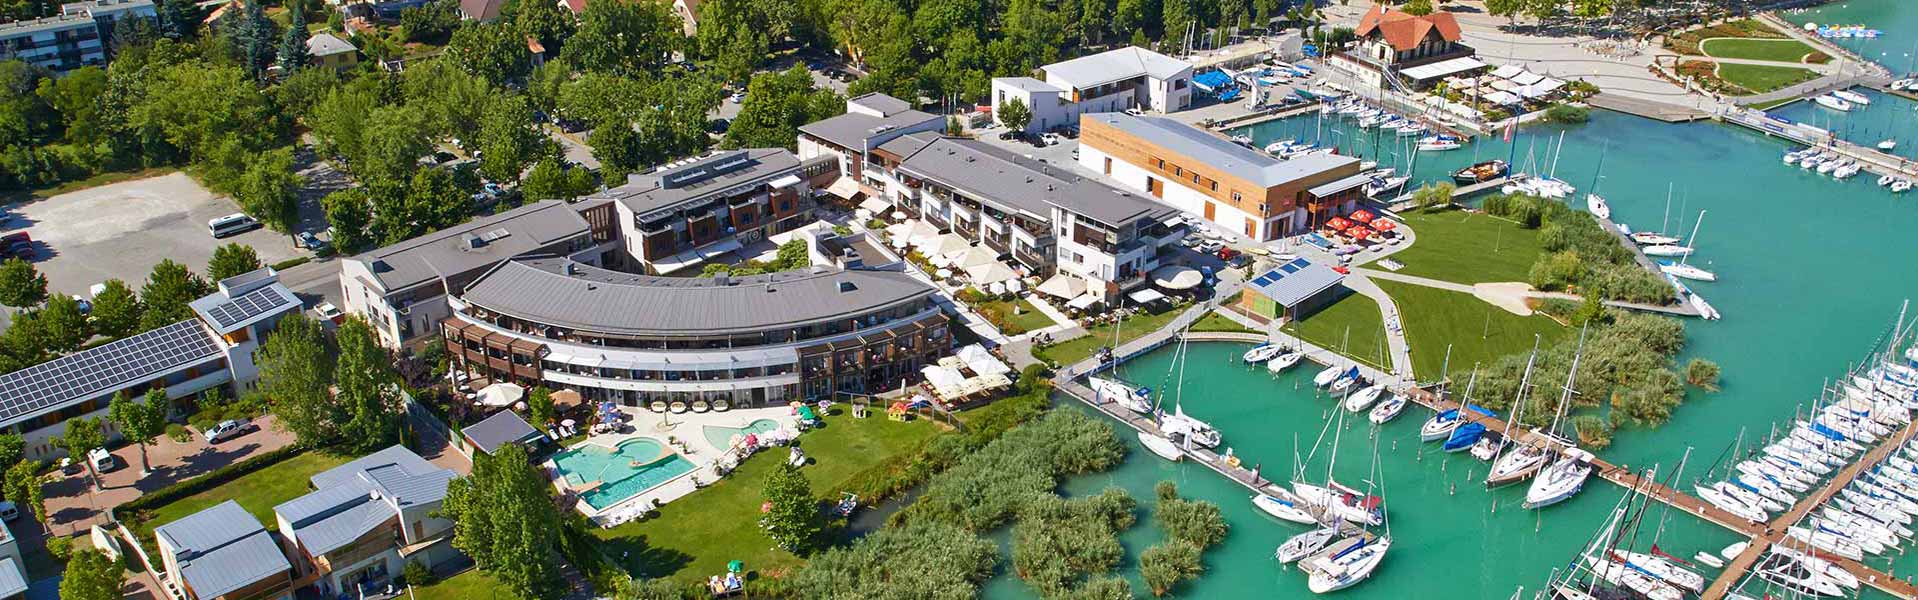 Užitočné informácie :: Hotel Golden Lake Resort